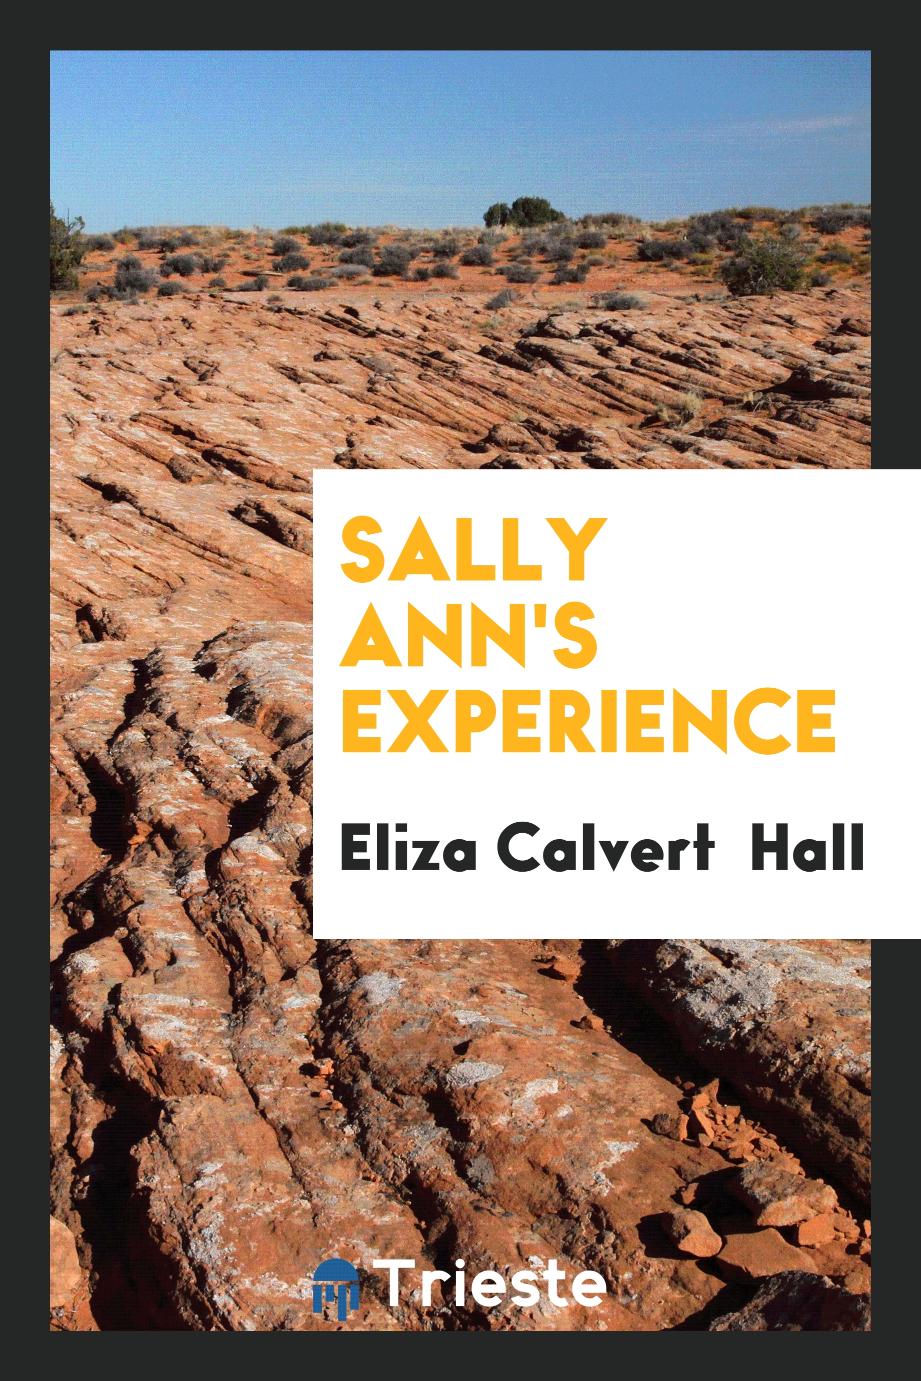 Sally Ann's Experience